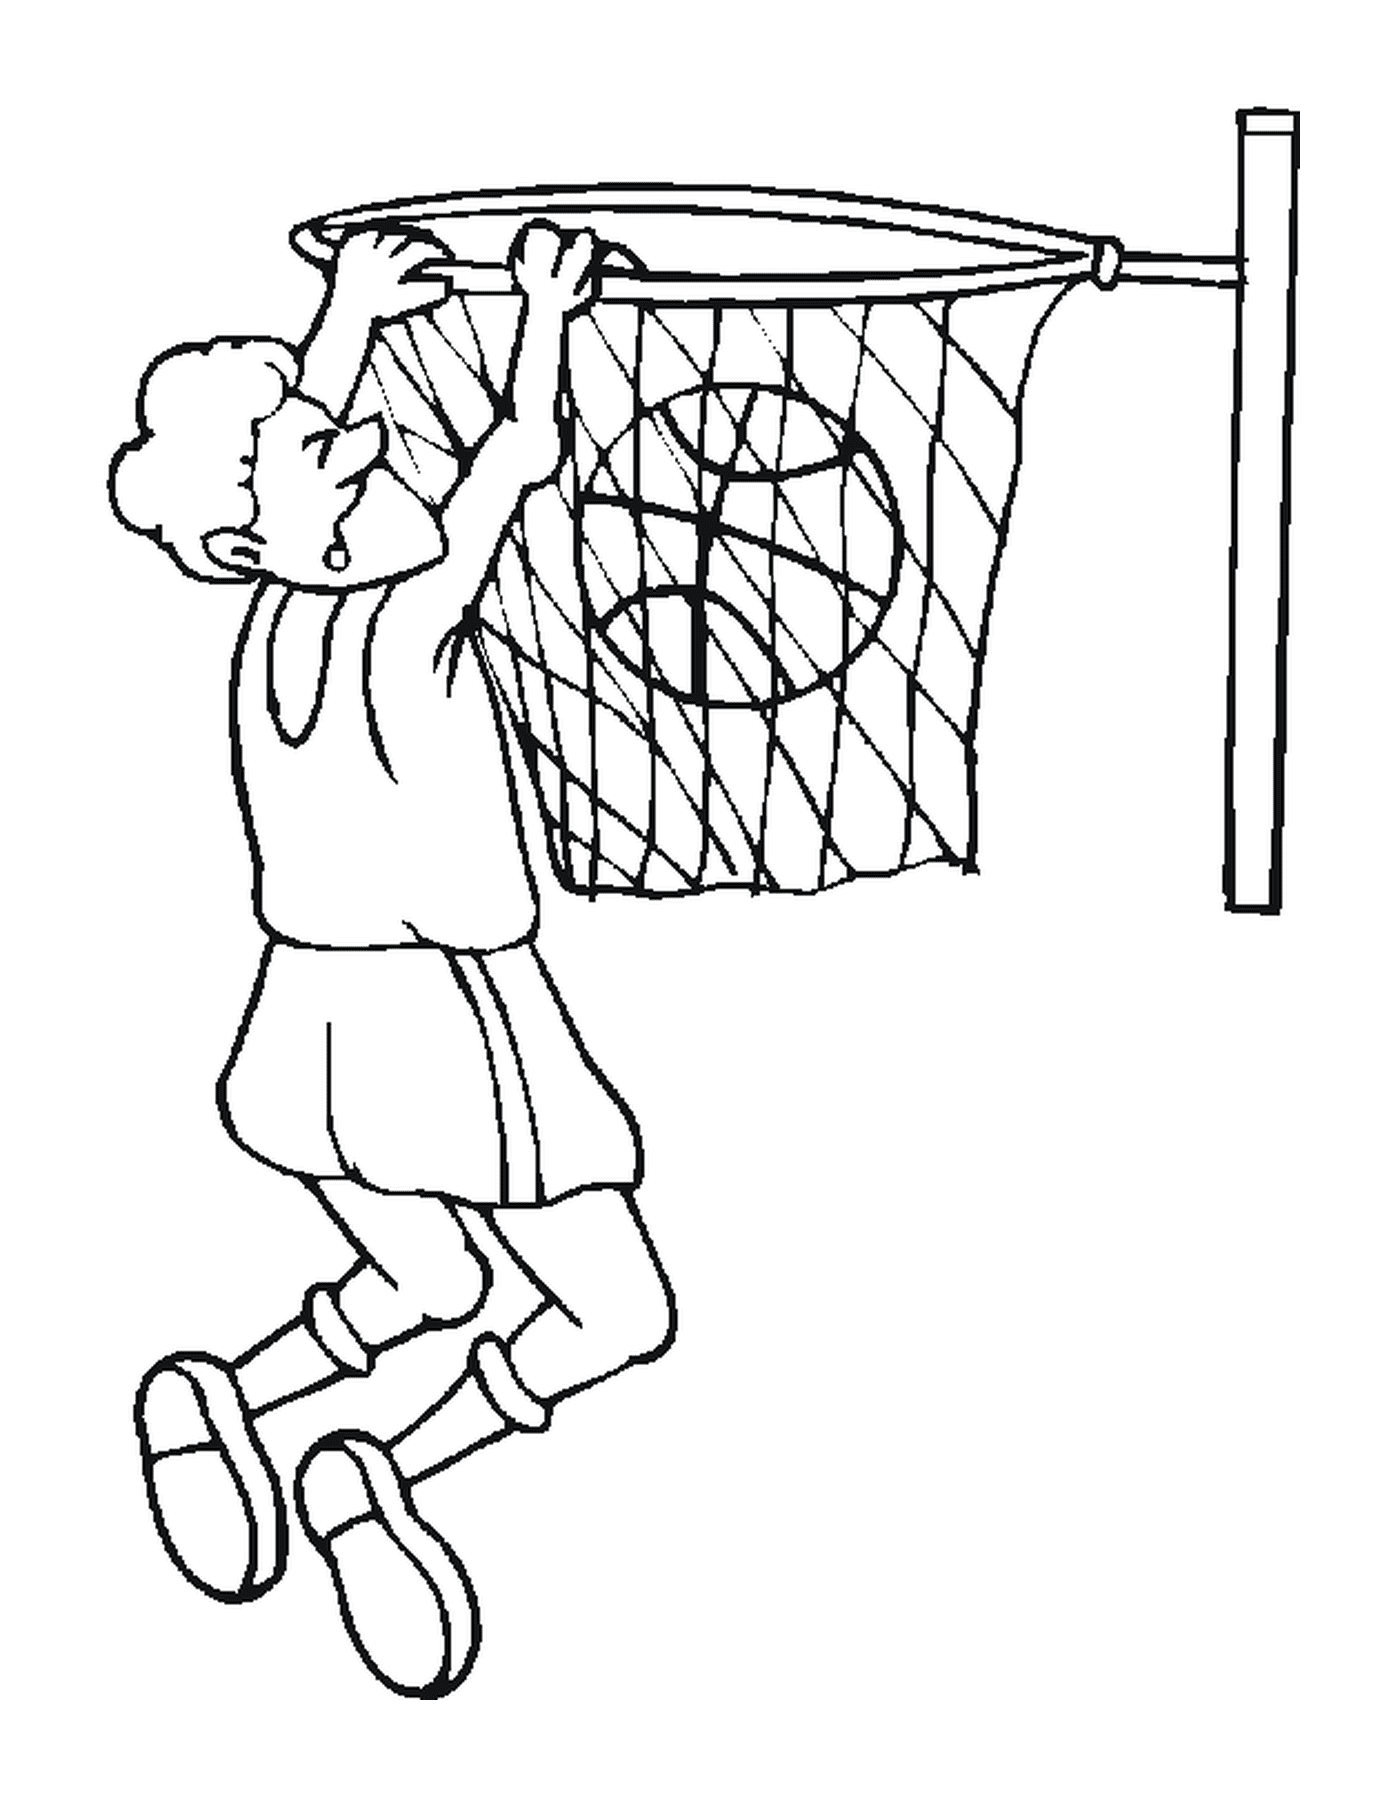  A dunk 